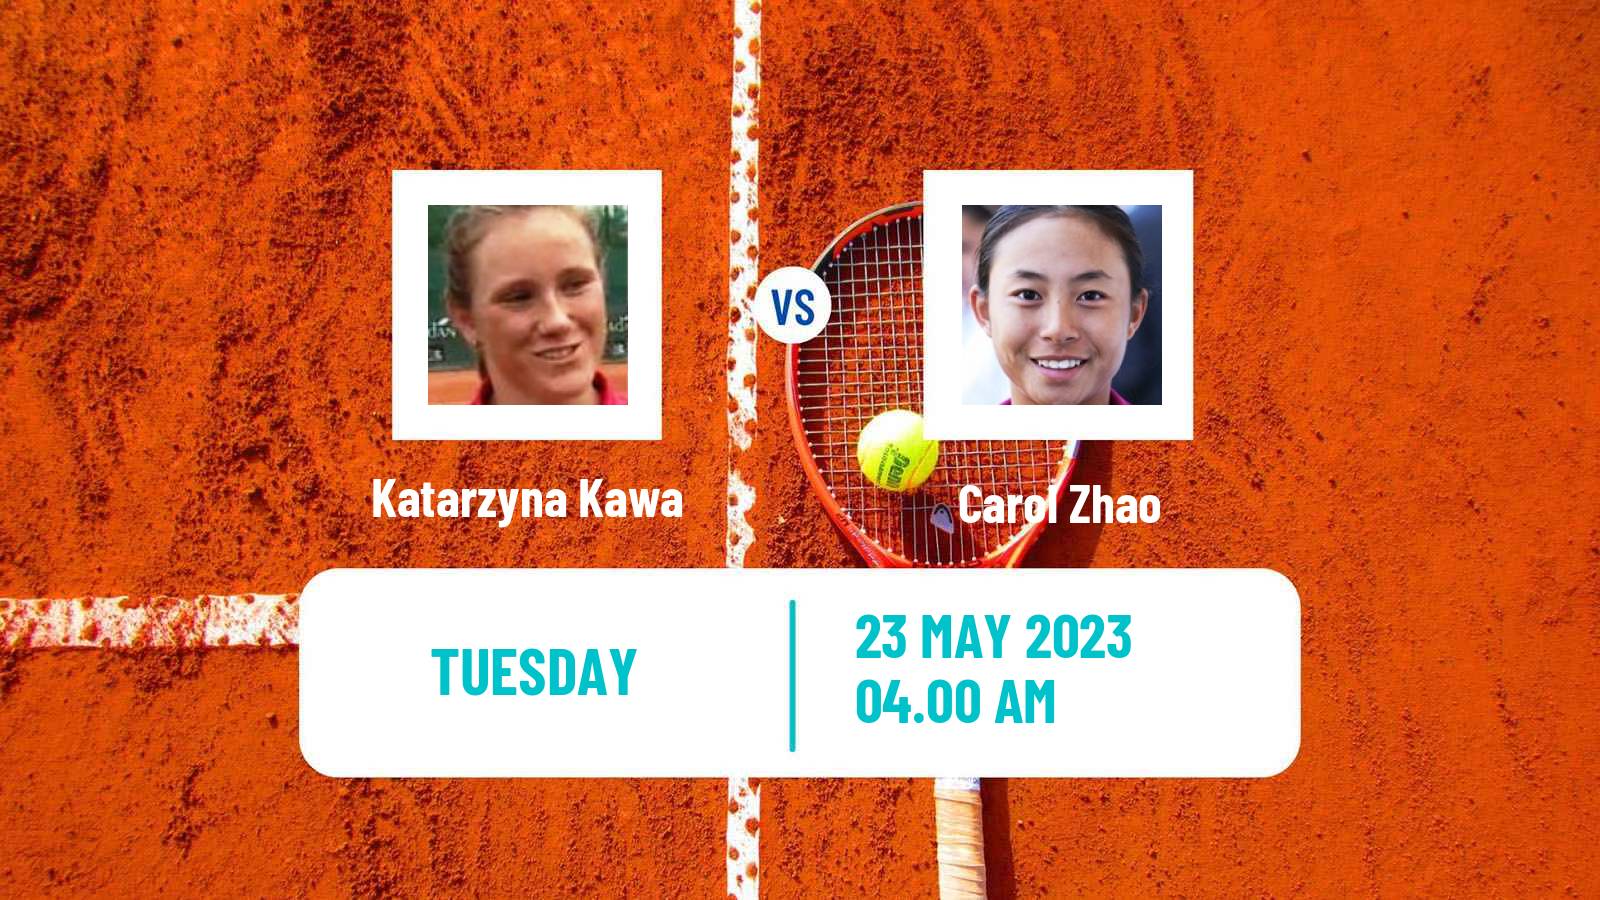 Tennis WTA Roland Garros Katarzyna Kawa - Carol Zhao